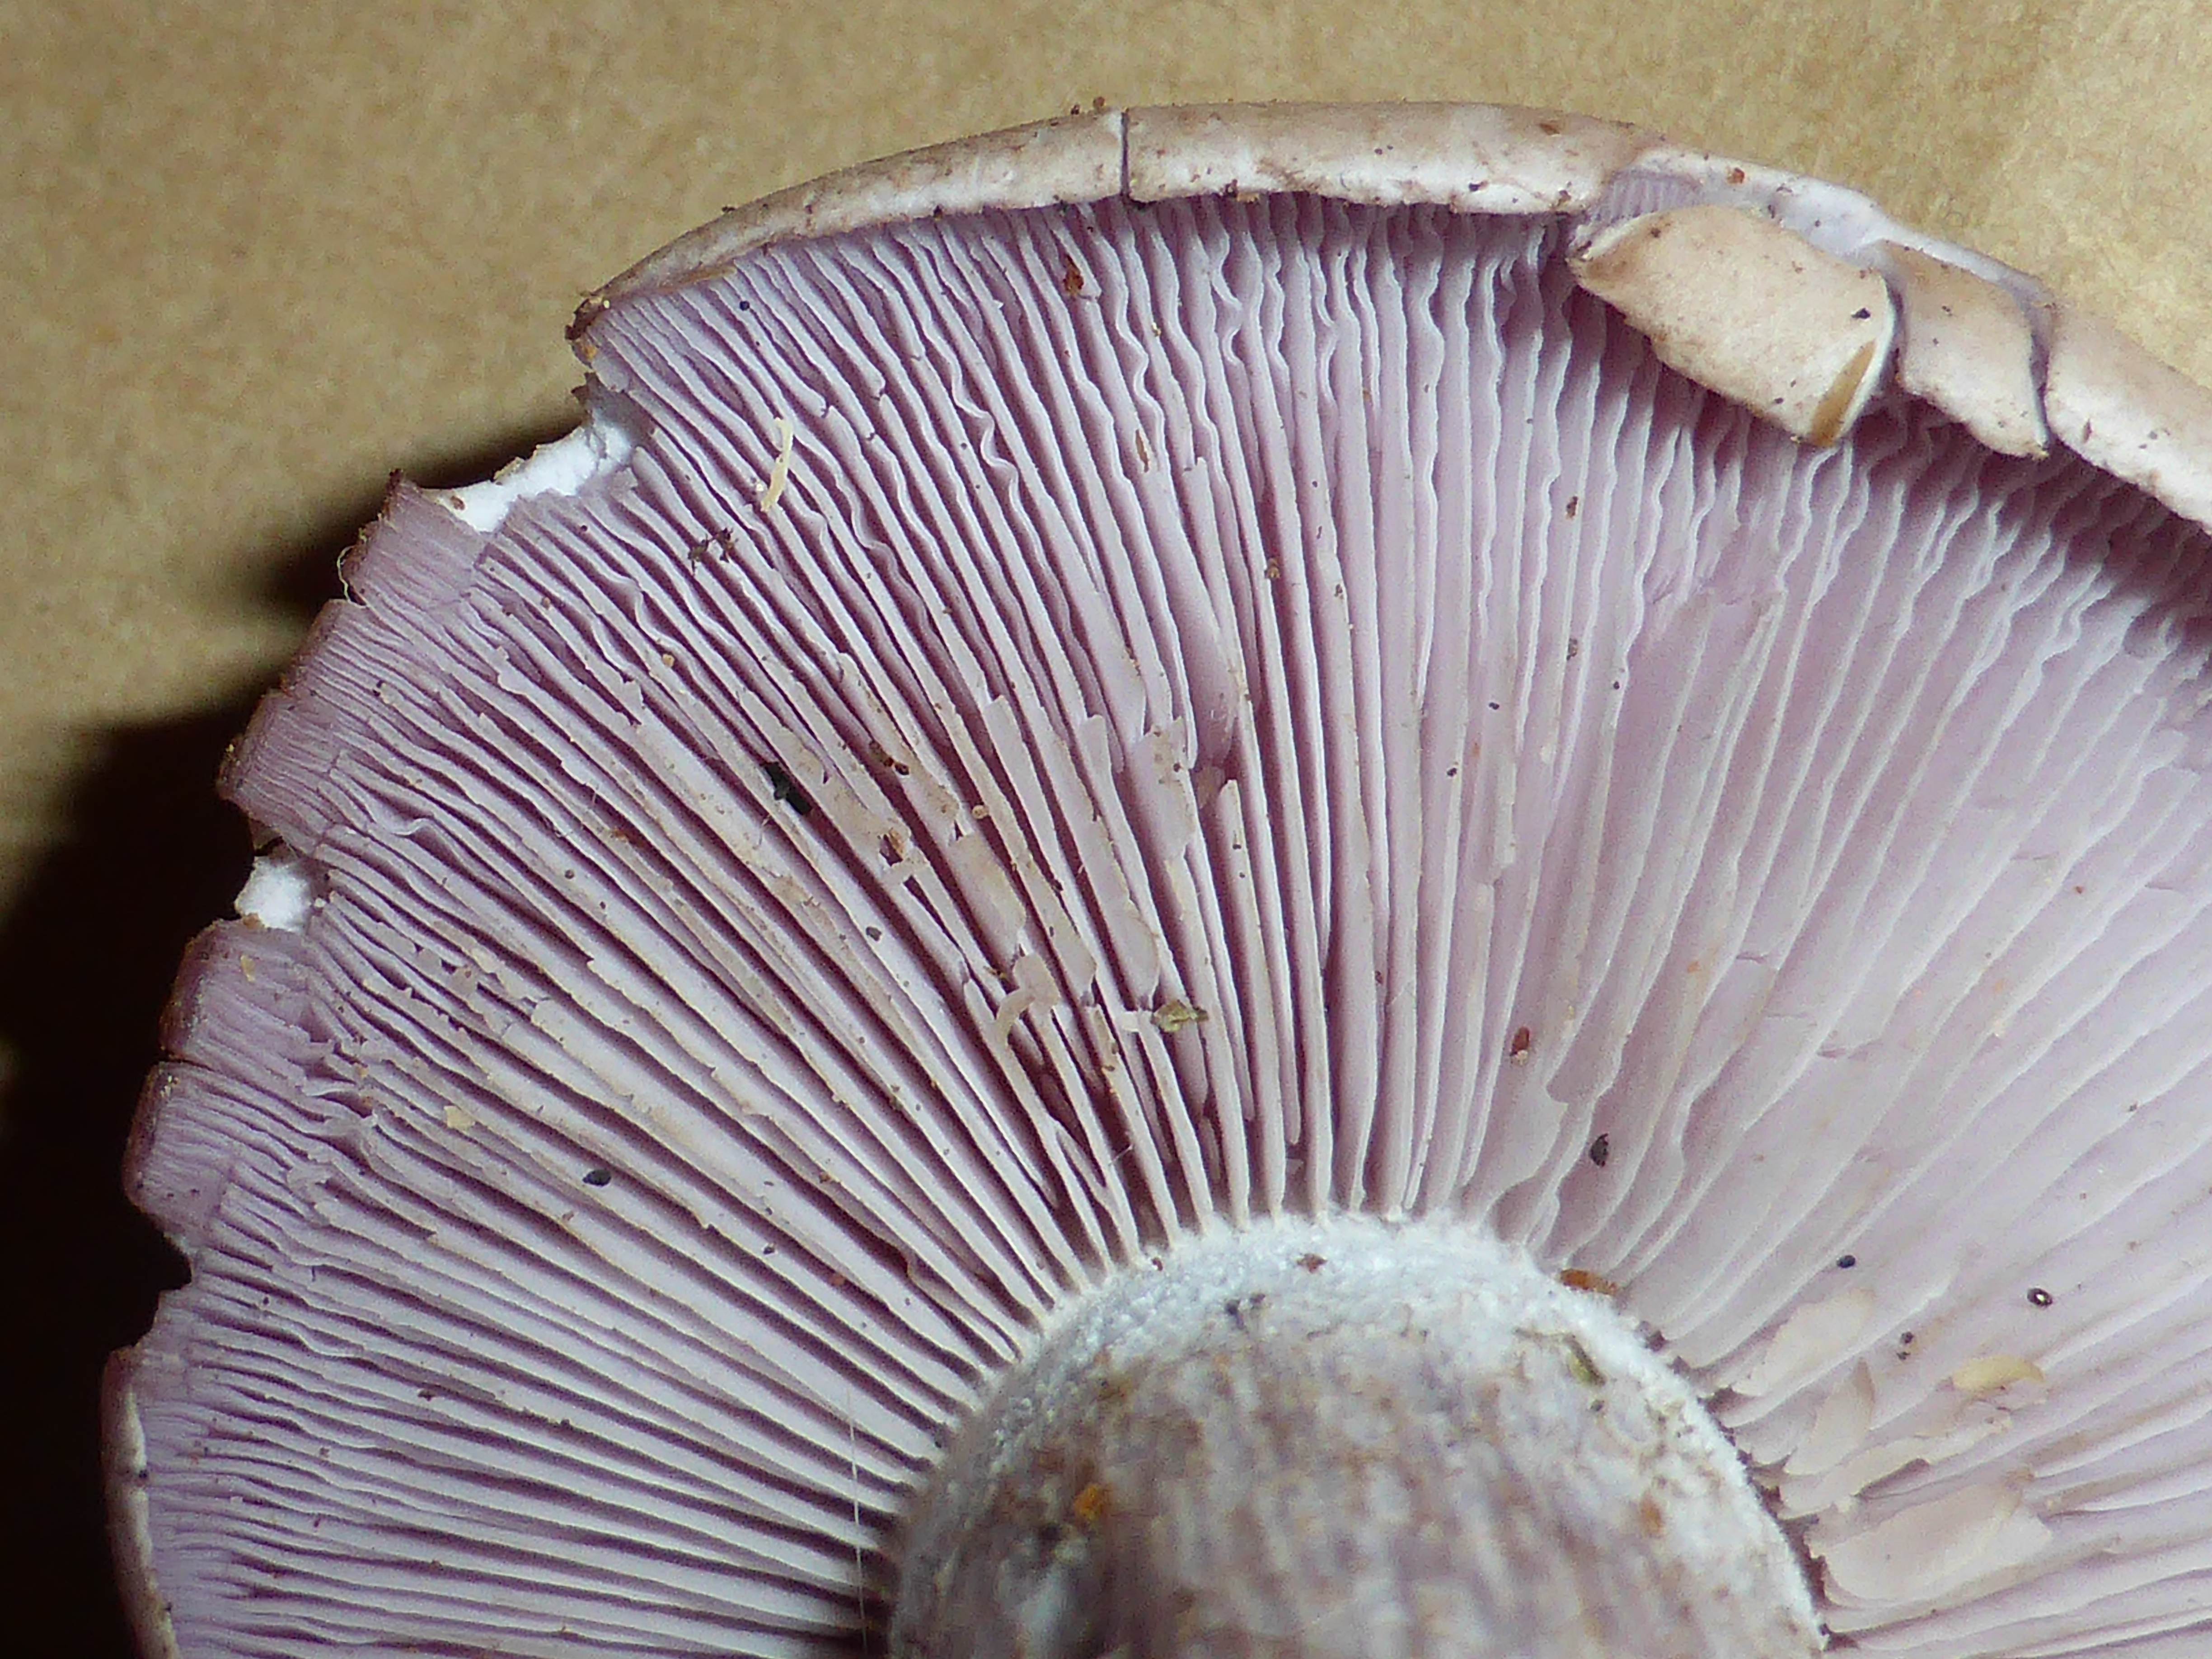 Unidentified mushroom - september 2013 05